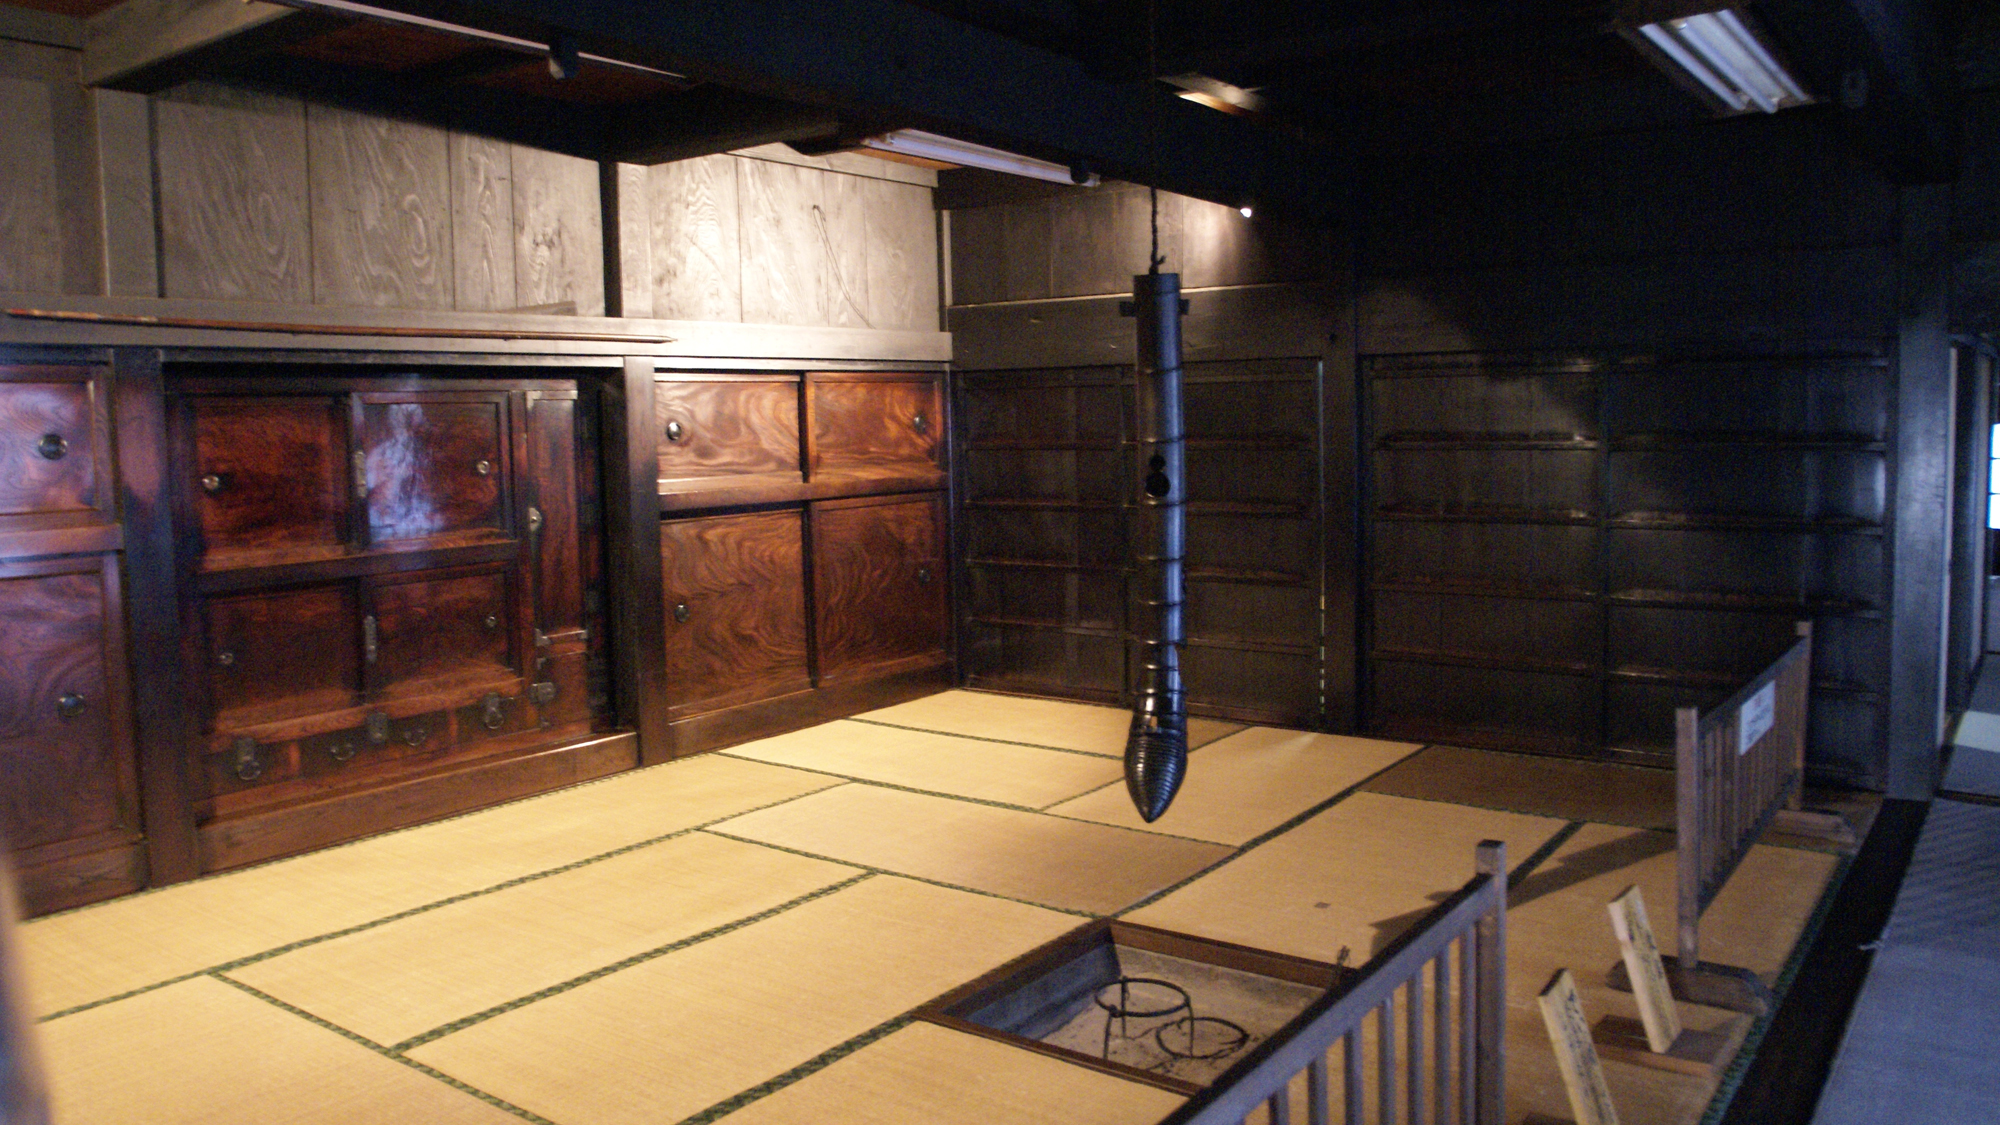 *【鶴富屋敷】国指定重要文化財で鶴富姫と那須大八郎の恋物語の舞台ともなった場所です。